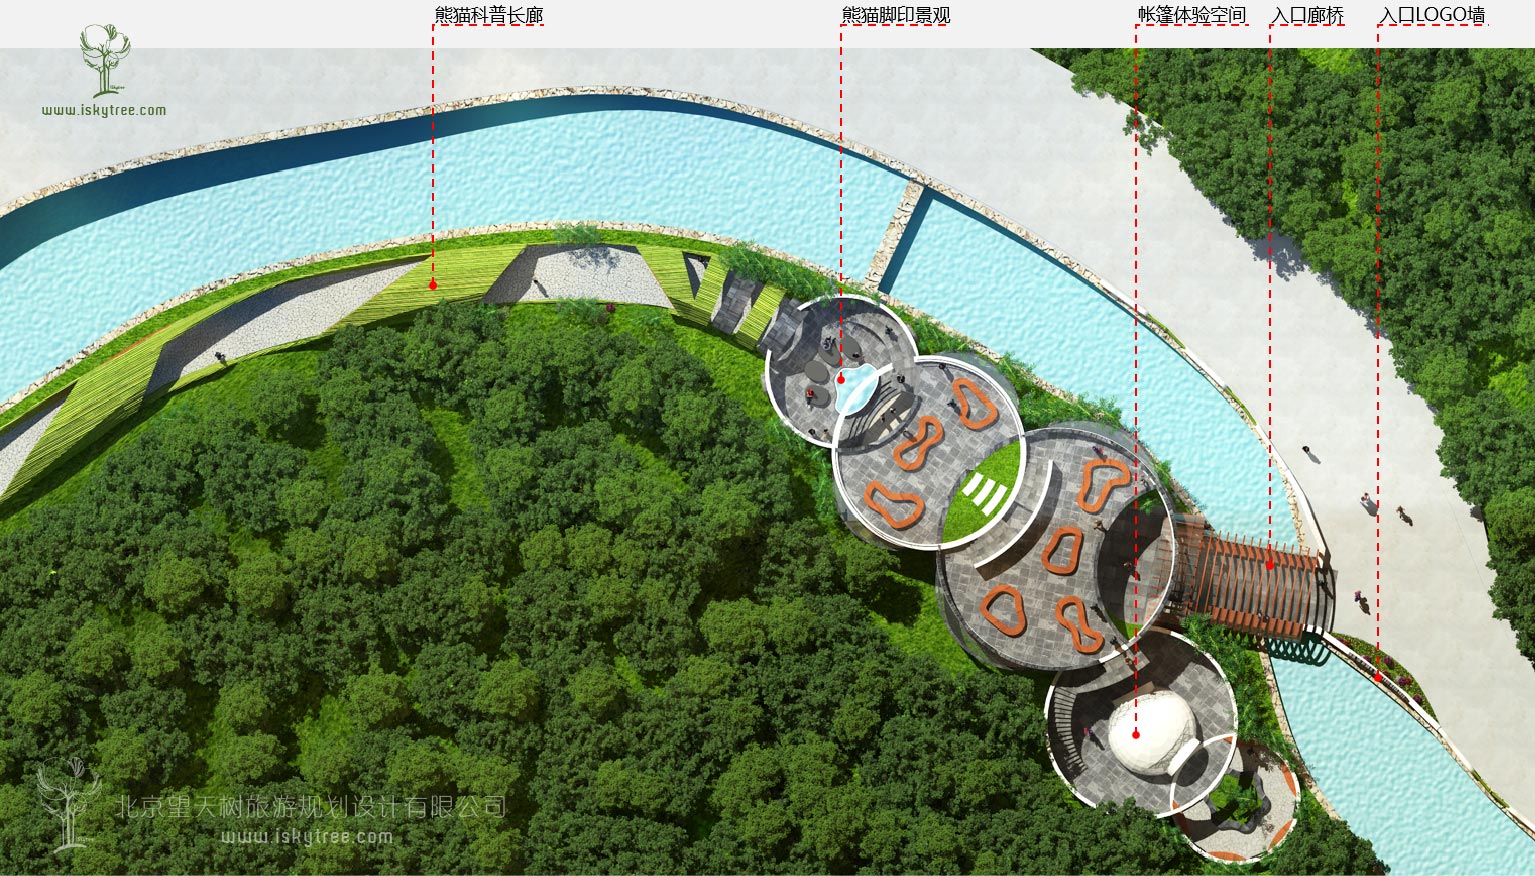 熊貓科普體驗館節點建筑景觀設計